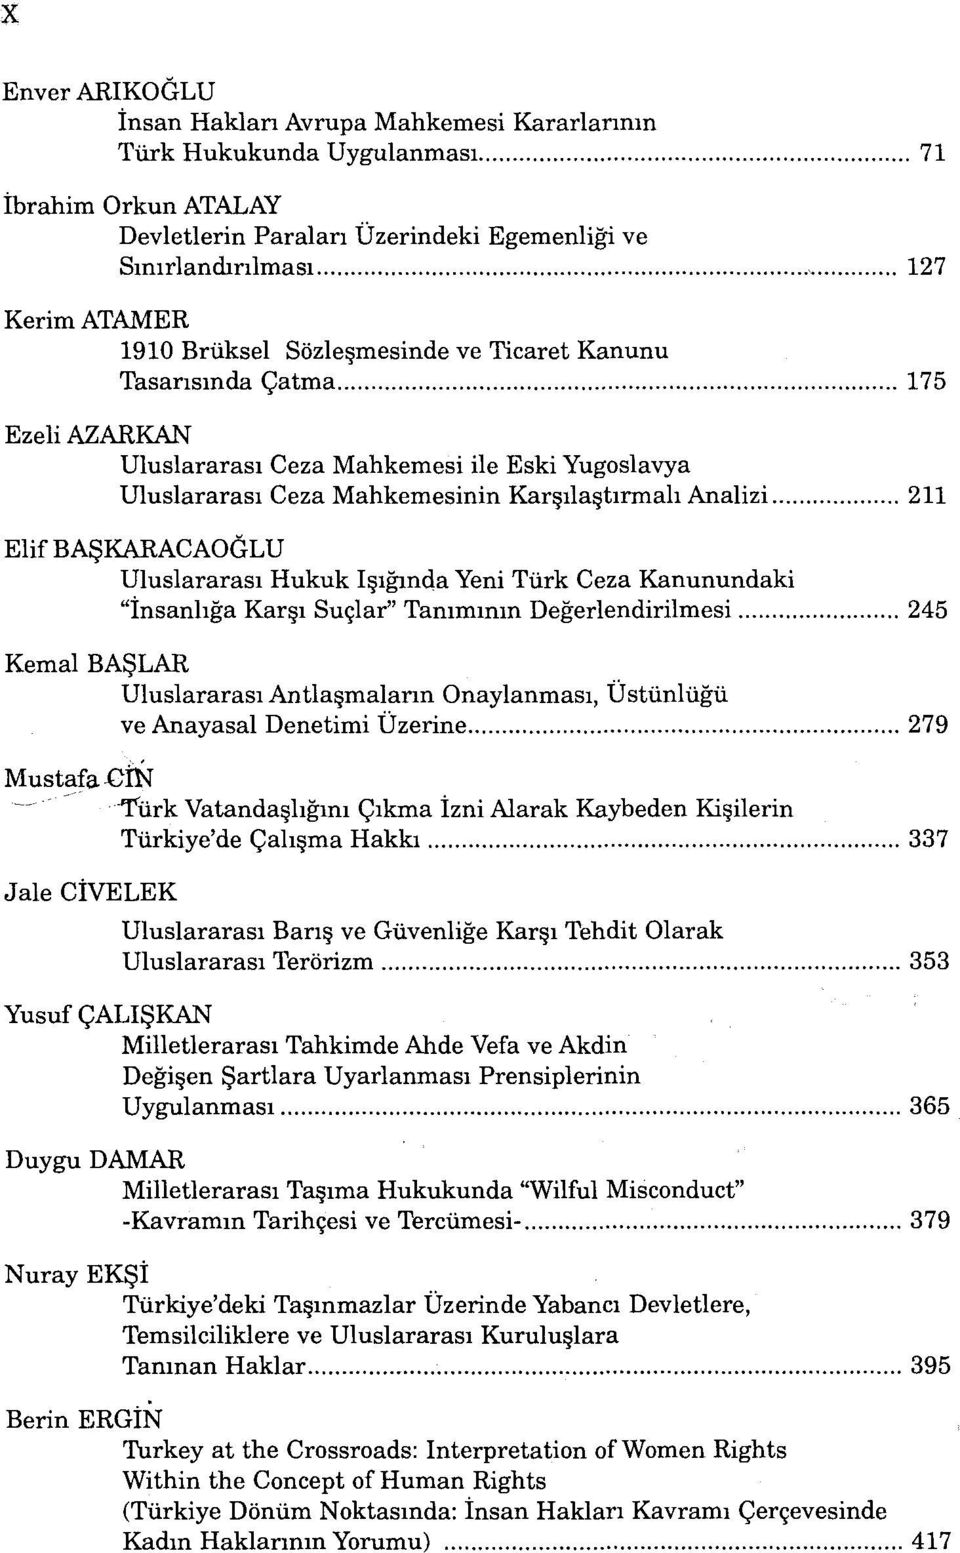 AŞKARACAOĞLU Uluslararası Hukuk Işığında Yeni Türk Ceza Kanunundaki "İnsanlığa Karşı Suçlar" Tanımının Değerlendirilmesi 245 Kemal BAŞLAR Uluslararası Antlaşmaların Onaylanması, Üstünlüğü ve Anayasal